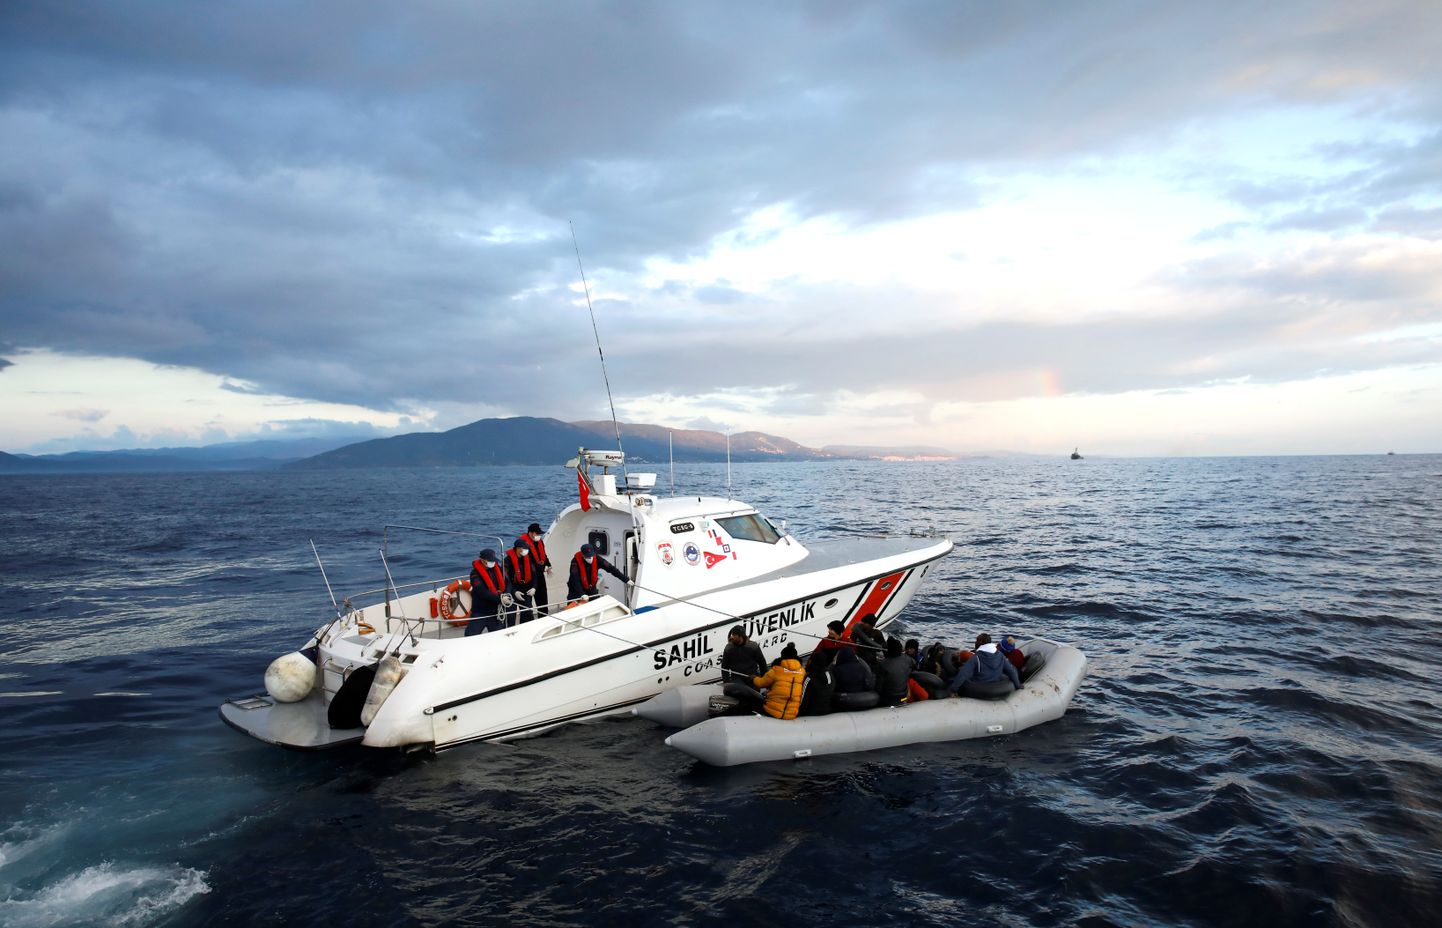 Turcijas krasta apsardze glābj migrantu laivu Egejas jūrā. 6.marts, 2020